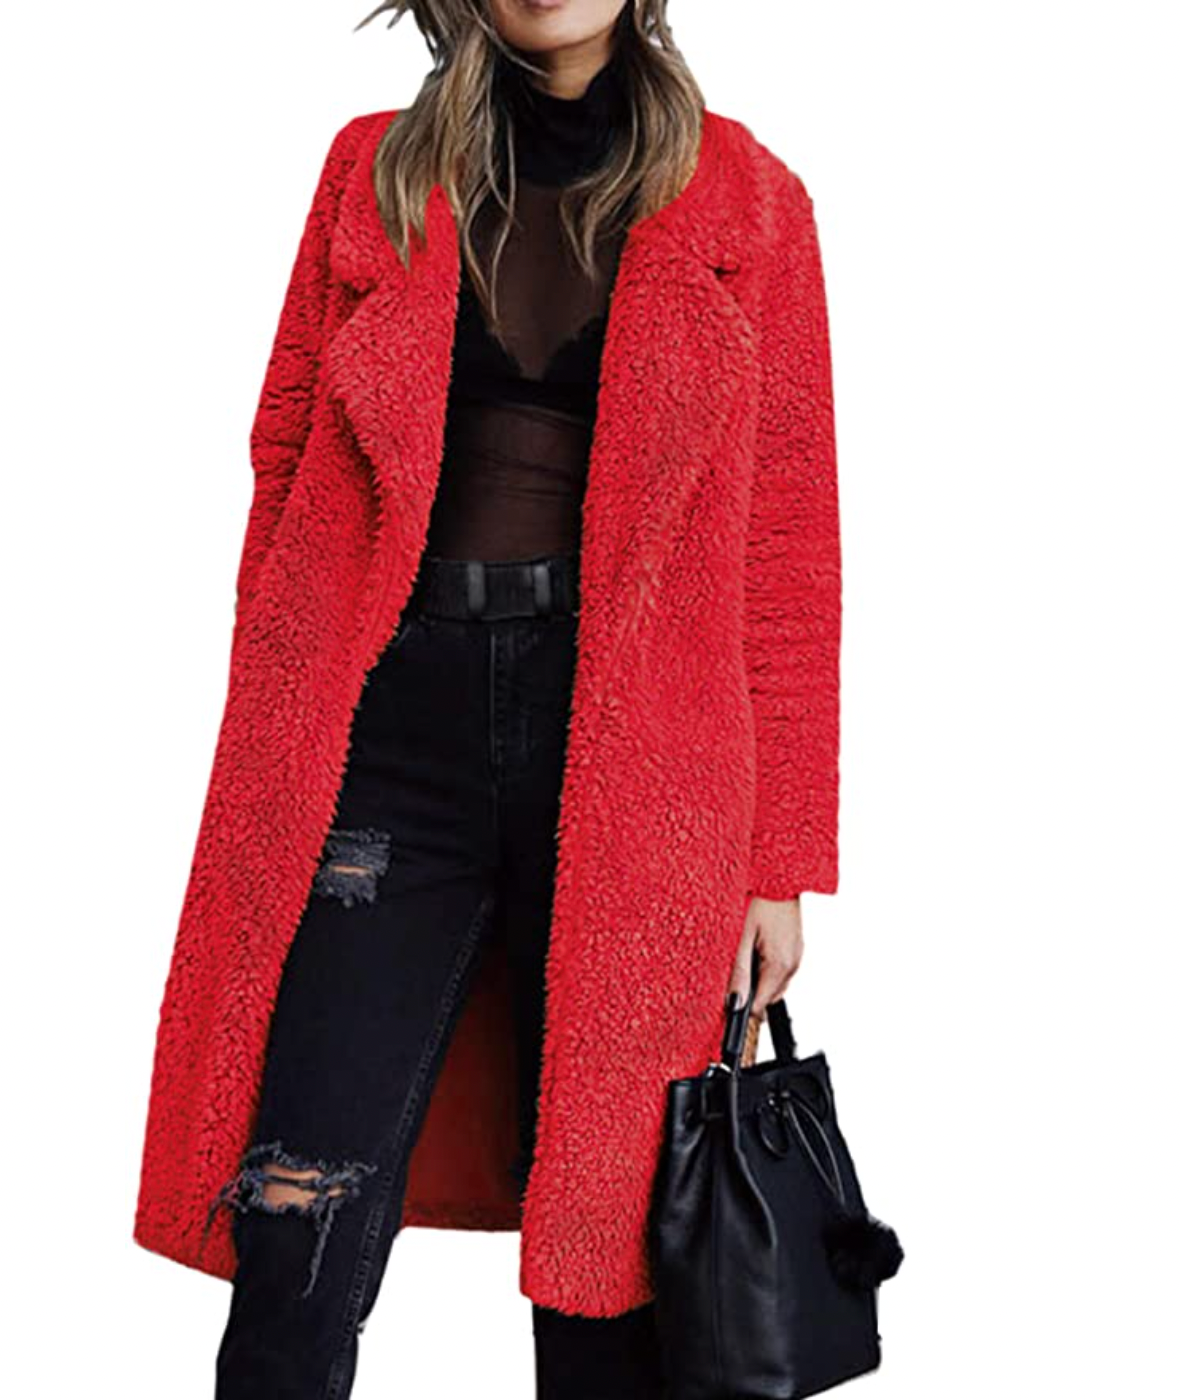 Women's Fuzzy Fleece Lapel Open Front Long Cardigan Coat Faux Fur Warm Winter Outwear Jackets